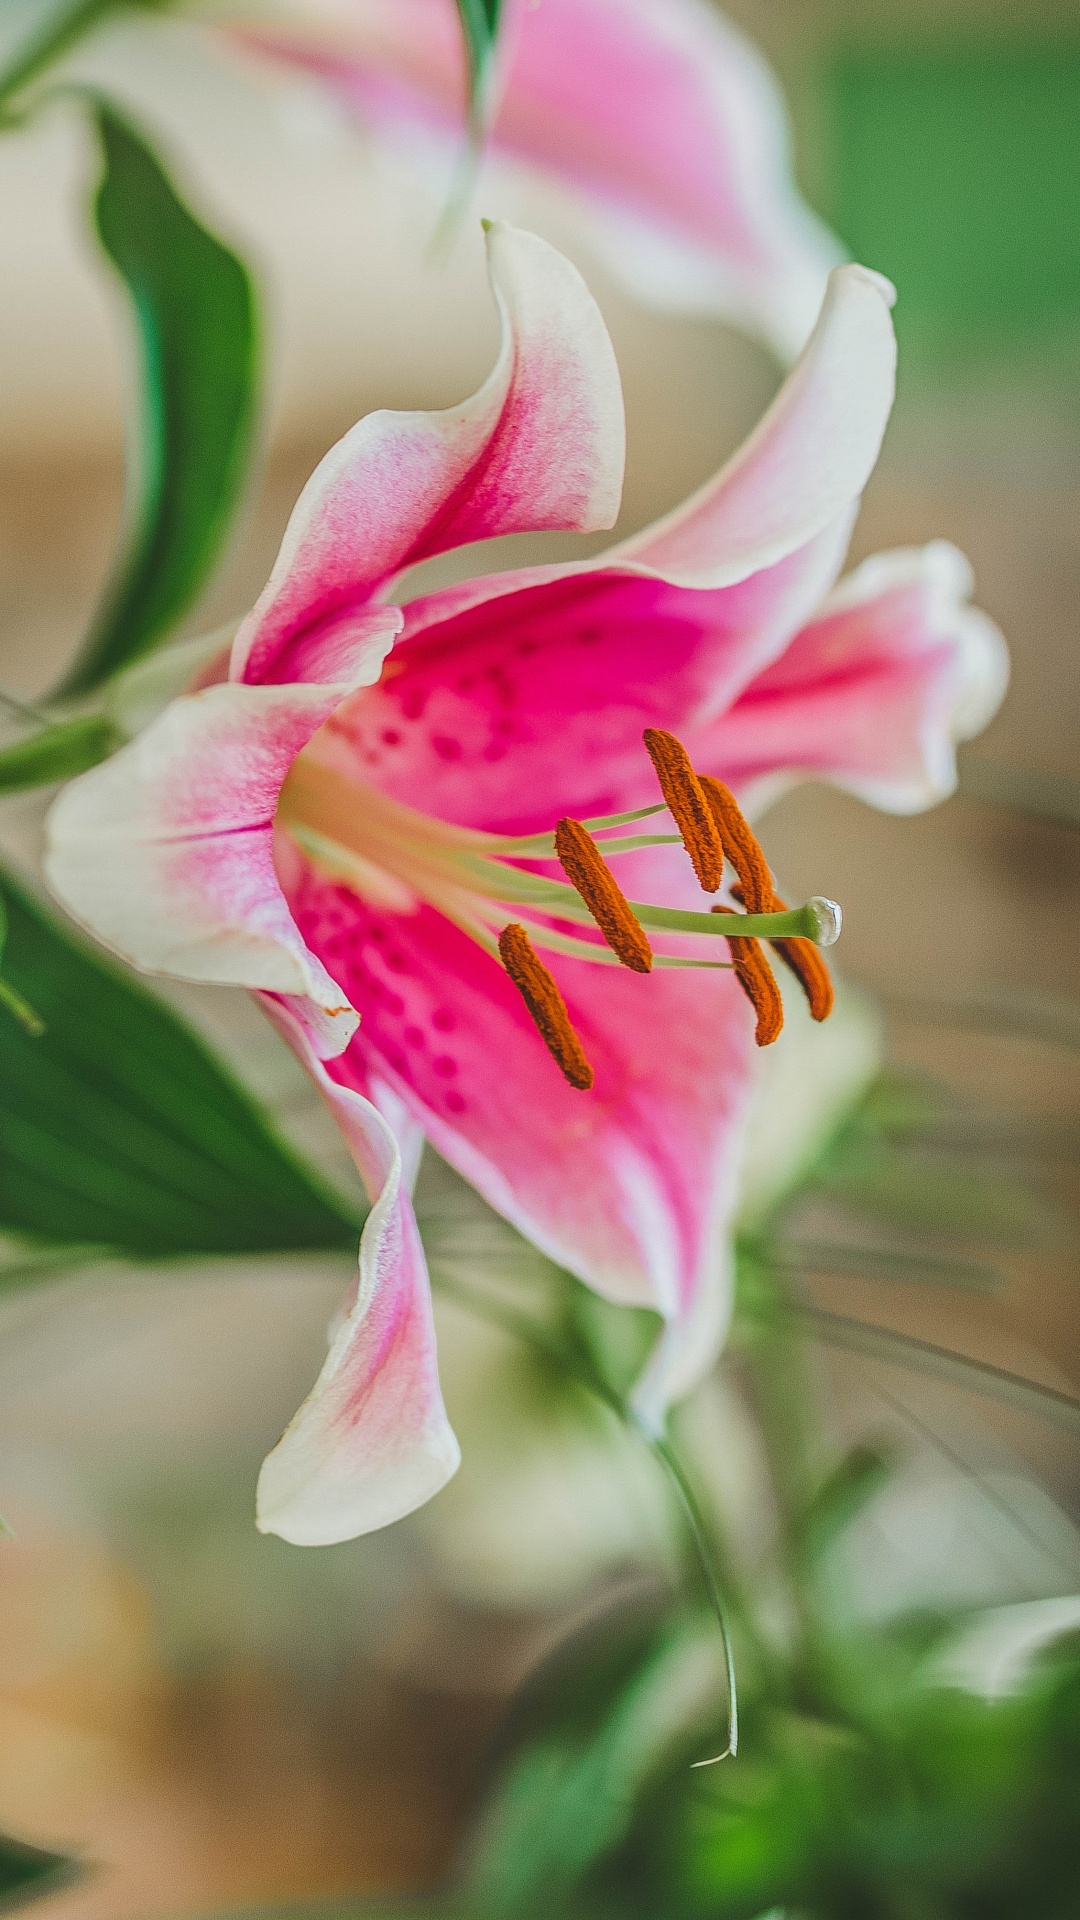 Pink and White Flower in Tilt Shift Lens. Wallpaper in 1080x1920 Resolution